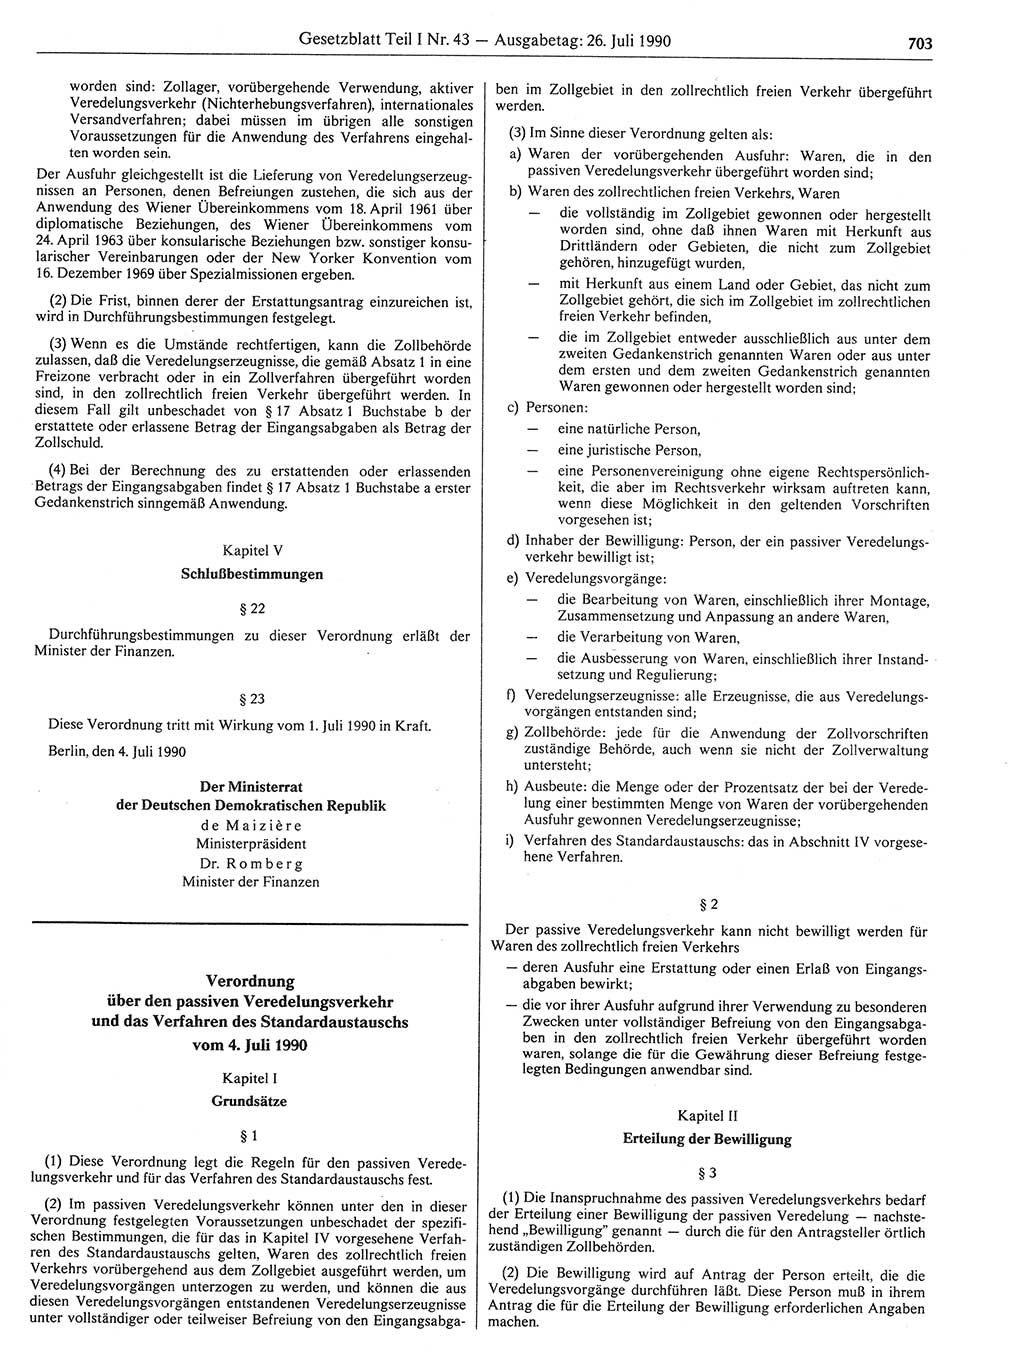 Gesetzblatt (GBl.) der Deutschen Demokratischen Republik (DDR) Teil Ⅰ 1990, Seite 703 (GBl. DDR Ⅰ 1990, S. 703)